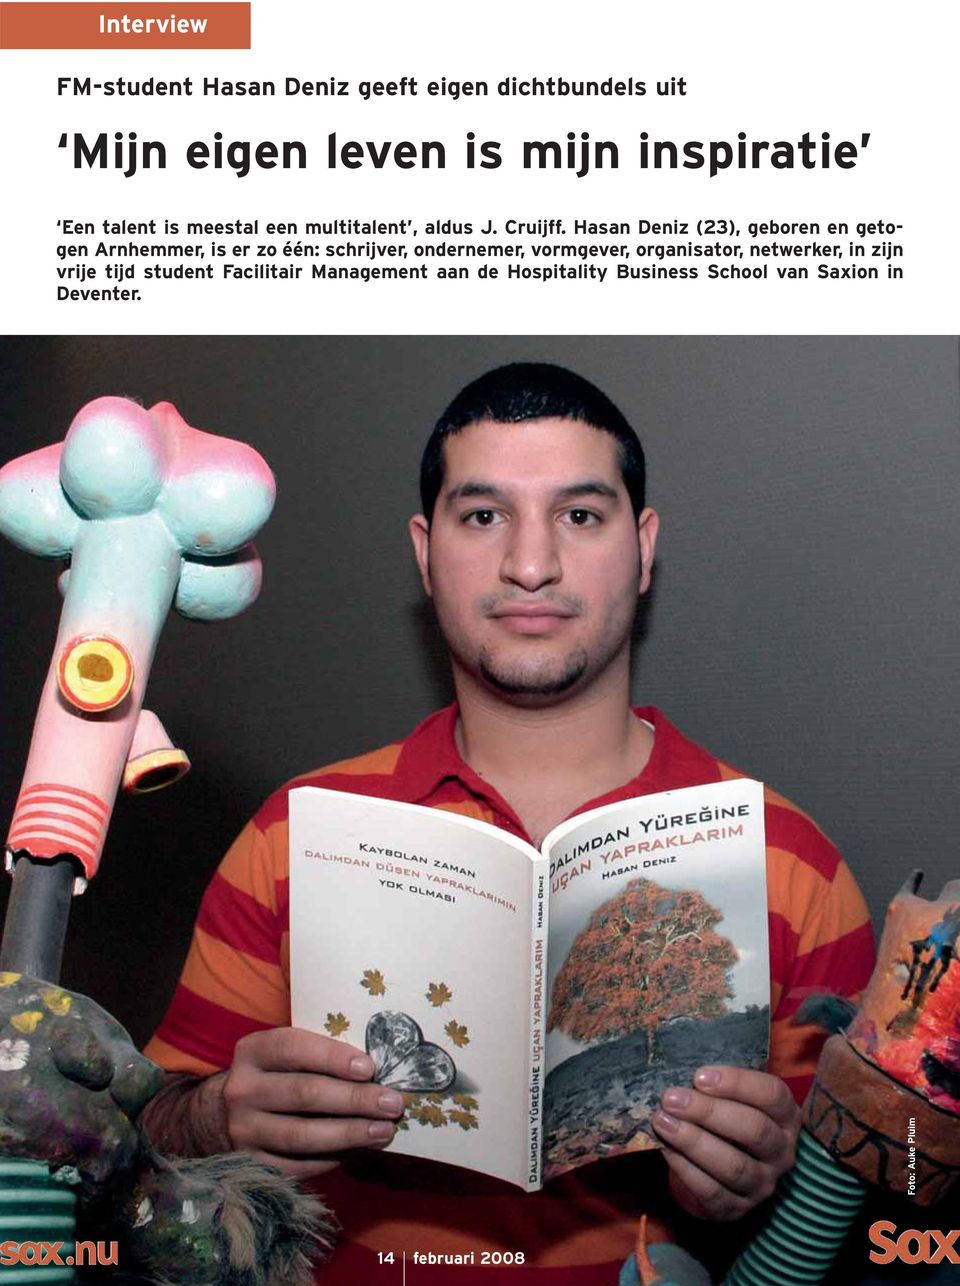 Hasan Deniz (23), geboren en getogen Arnhemmer, is er zo één: schrijver, ondernemer, vormgever,